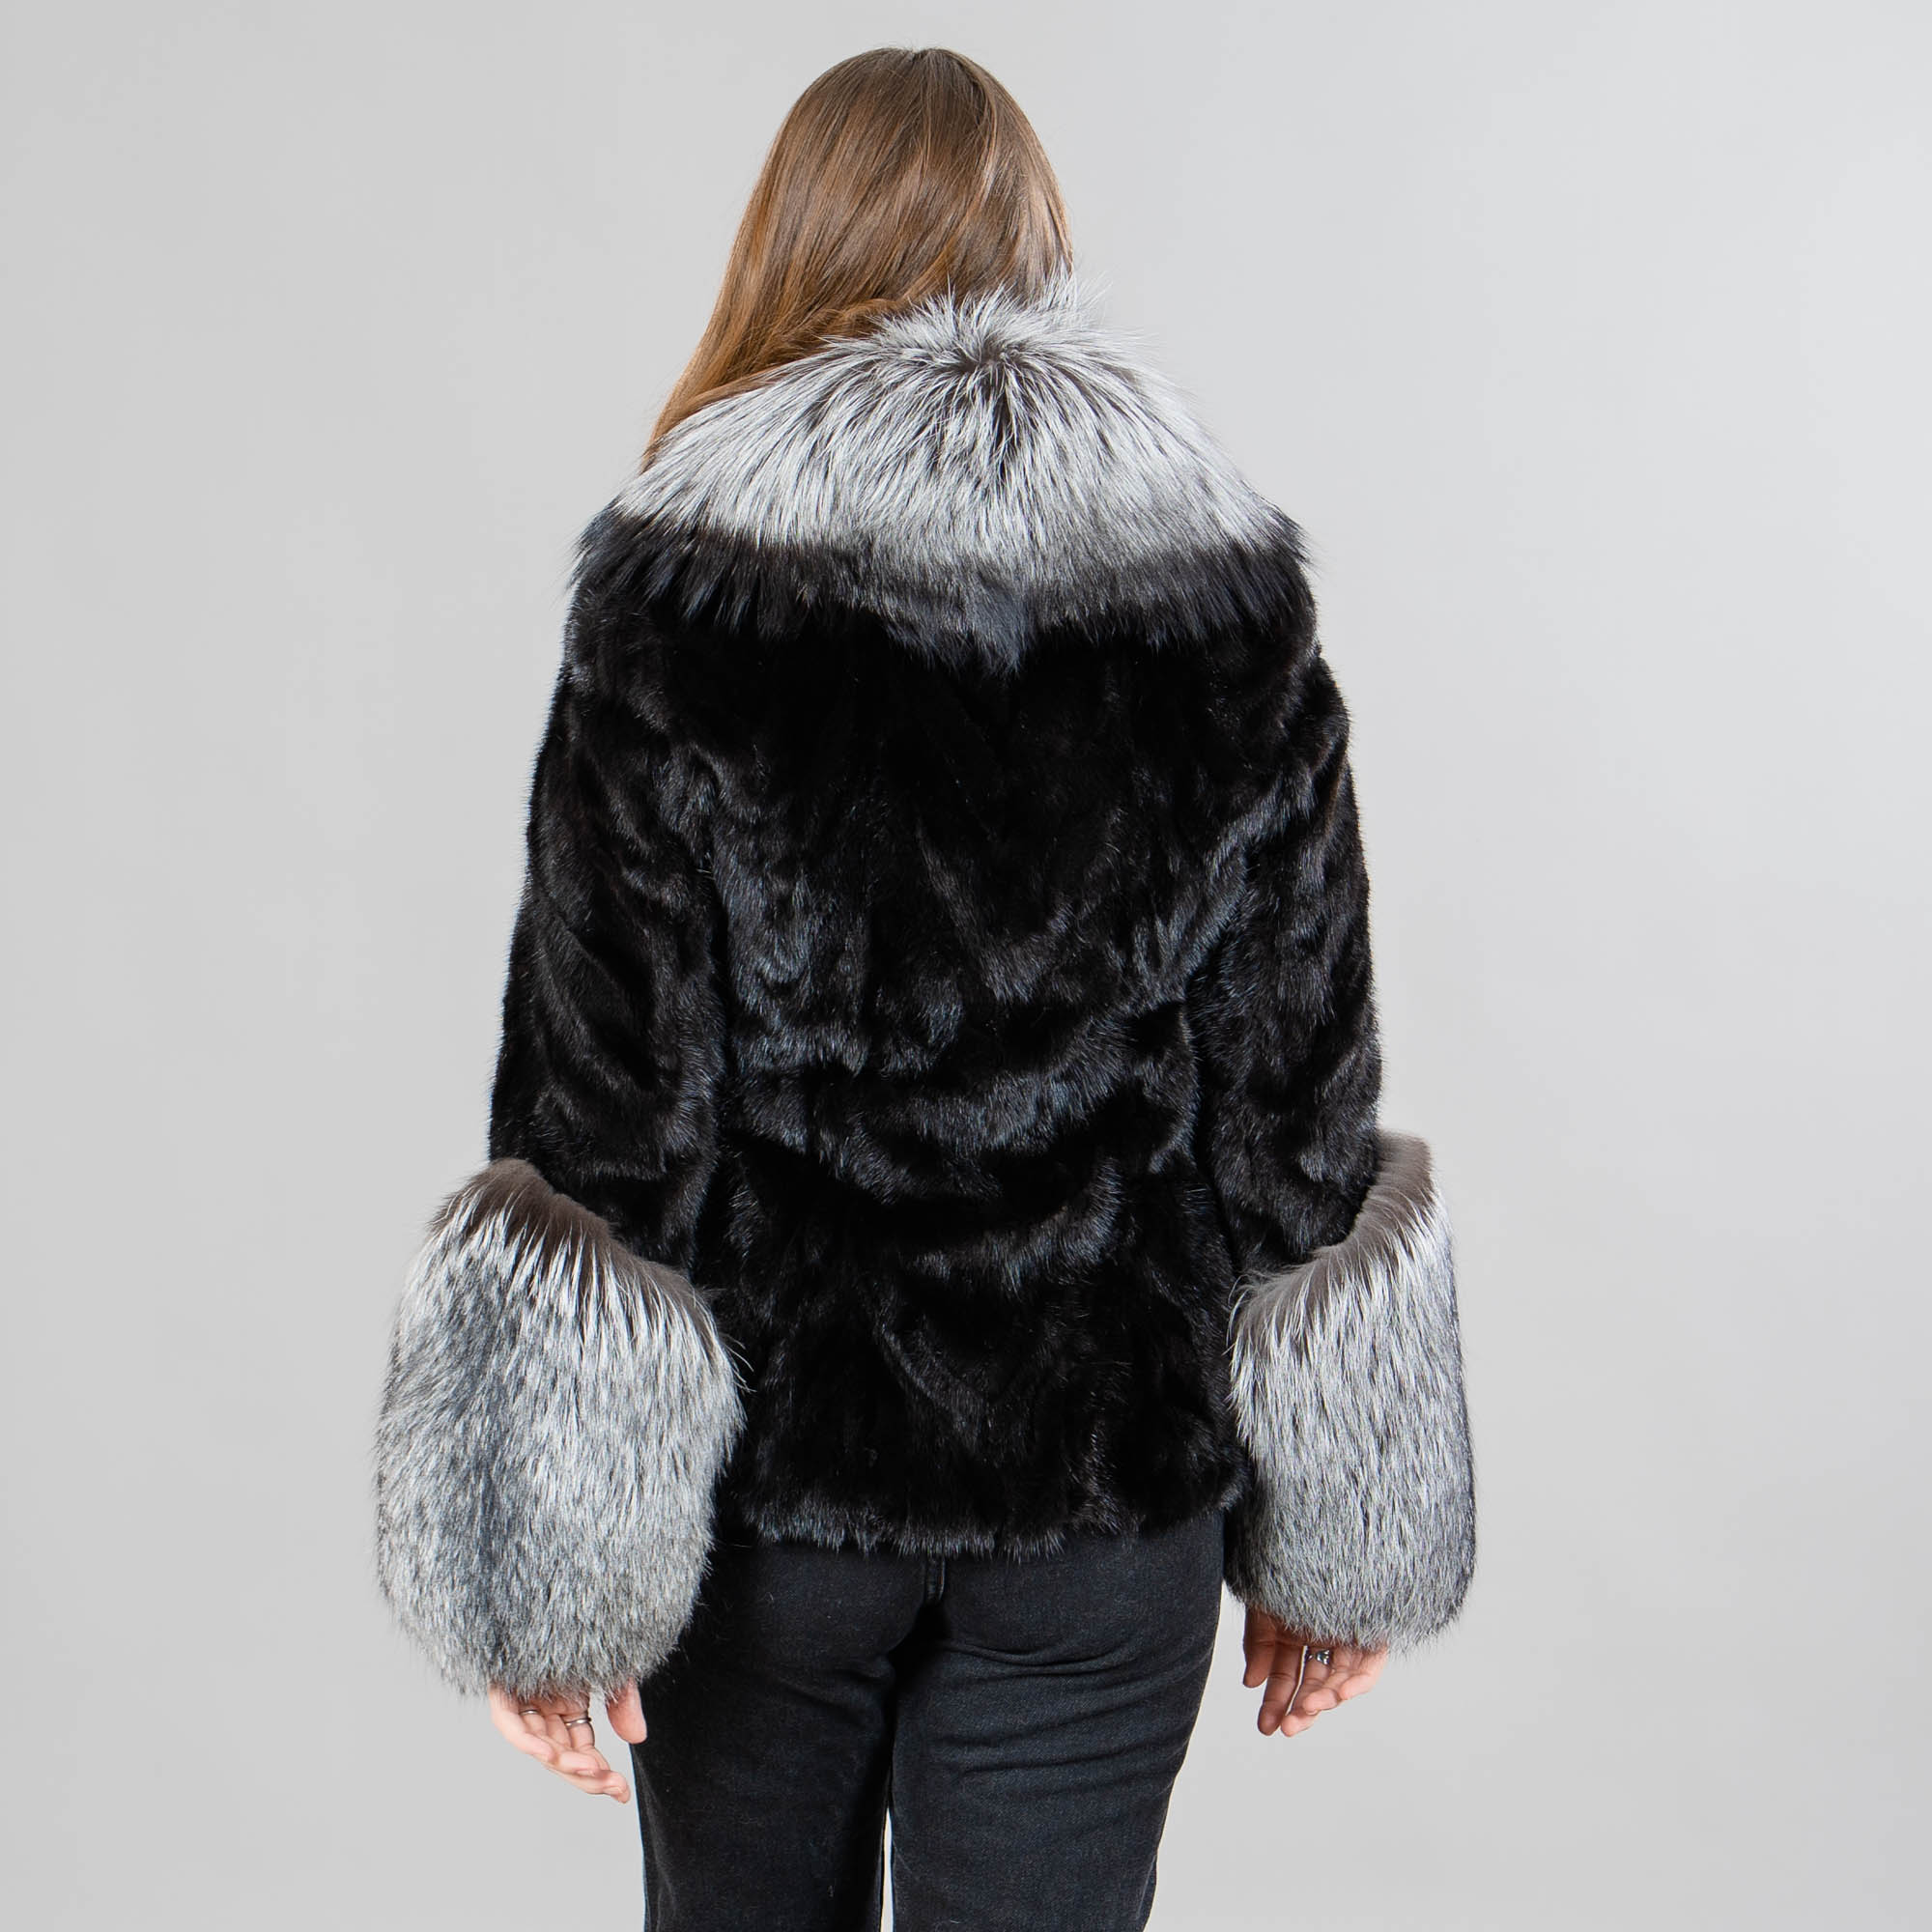 Mink fur jacket with fox fur details in black color